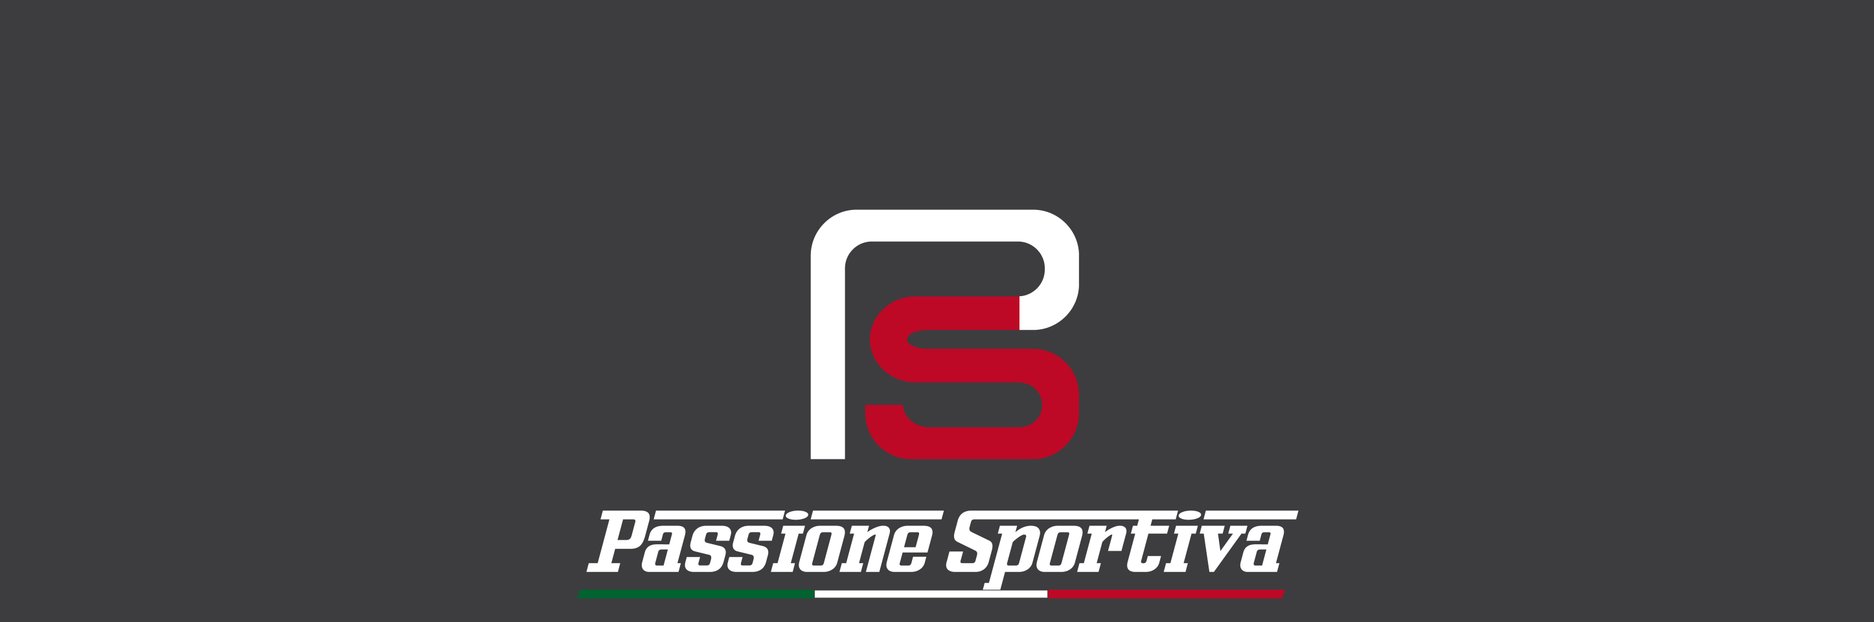 Passione Sportiva Sportwagenservice